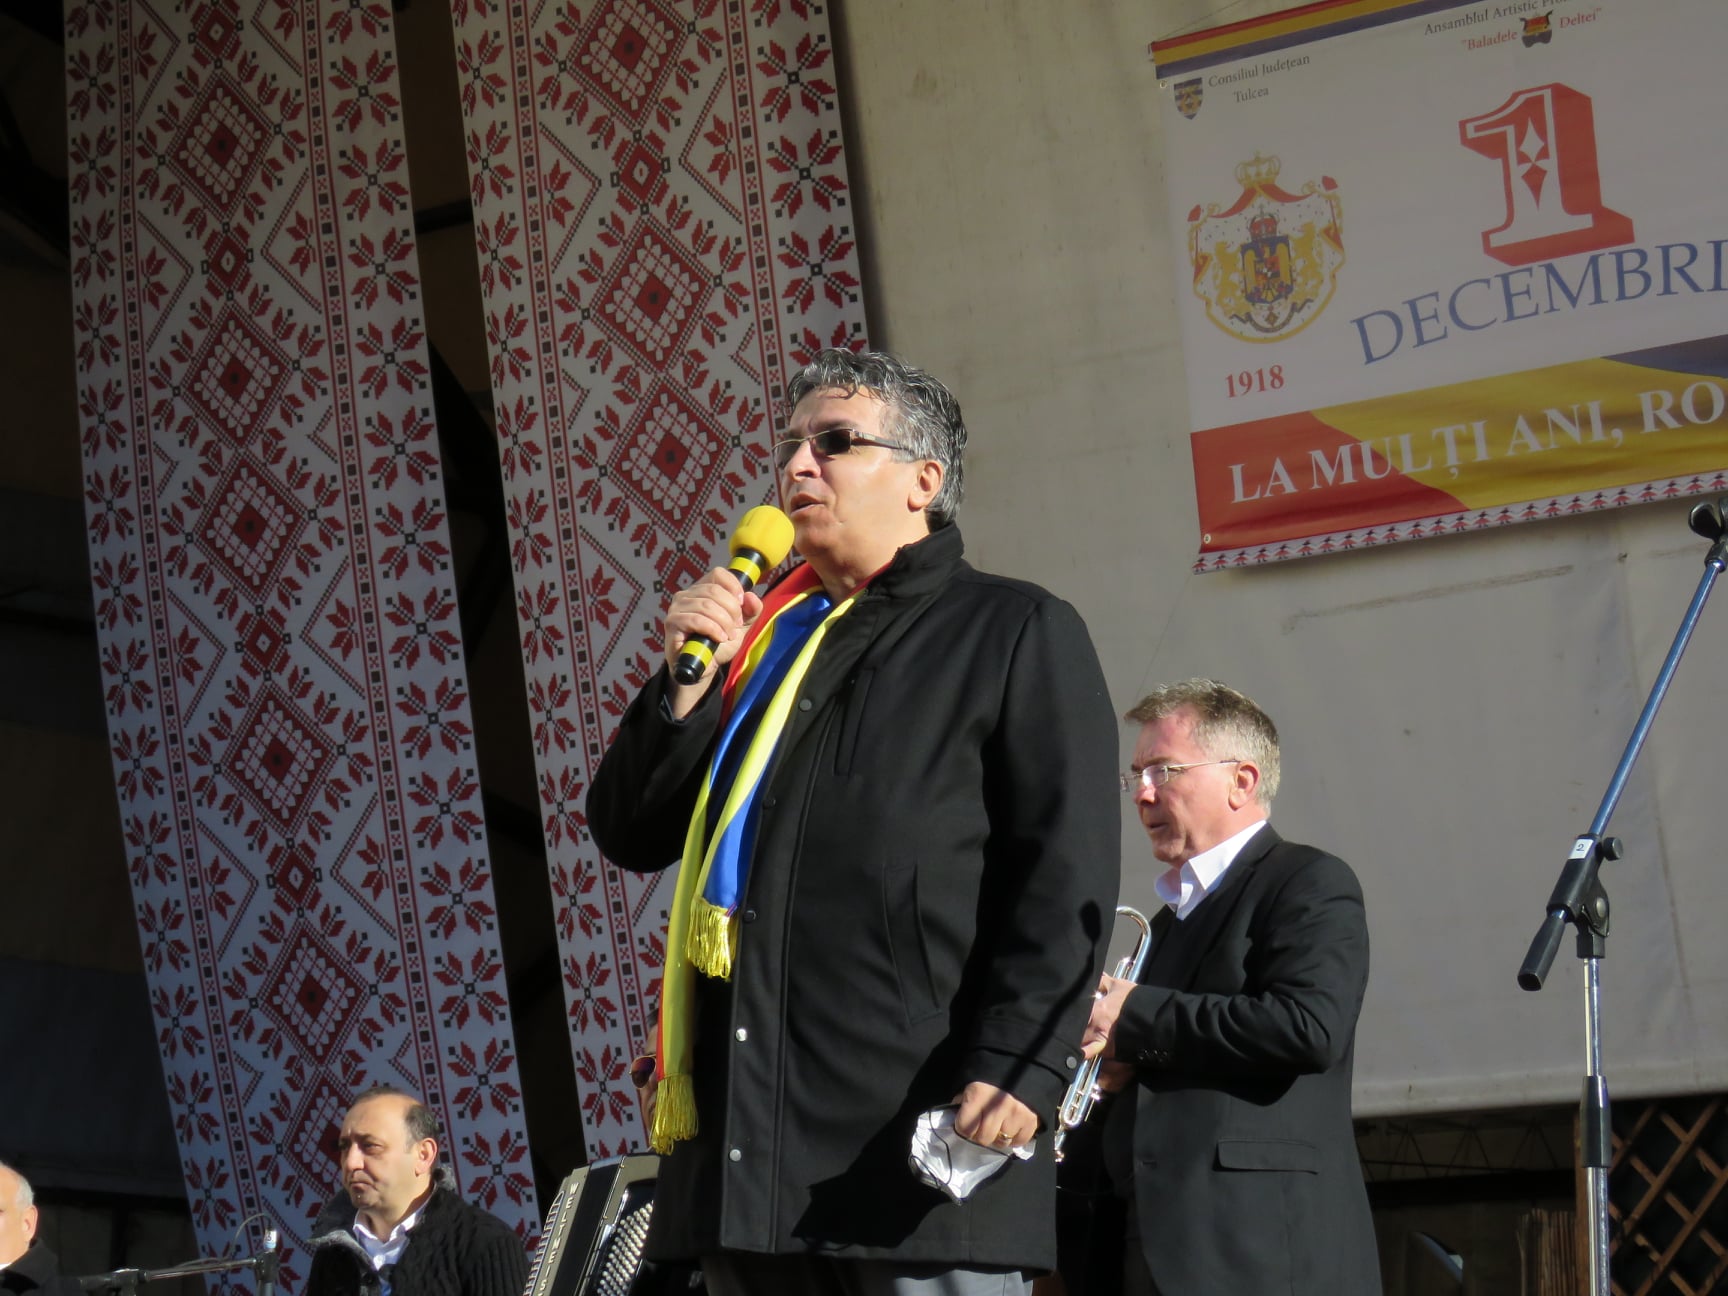 Mihai Huleni, vicepreședintele Consiliului Județean Tulcea: Să ne țină Dumnezeu sănătoși, într-o Românie unită! La mulți ani, dragi tulceni!